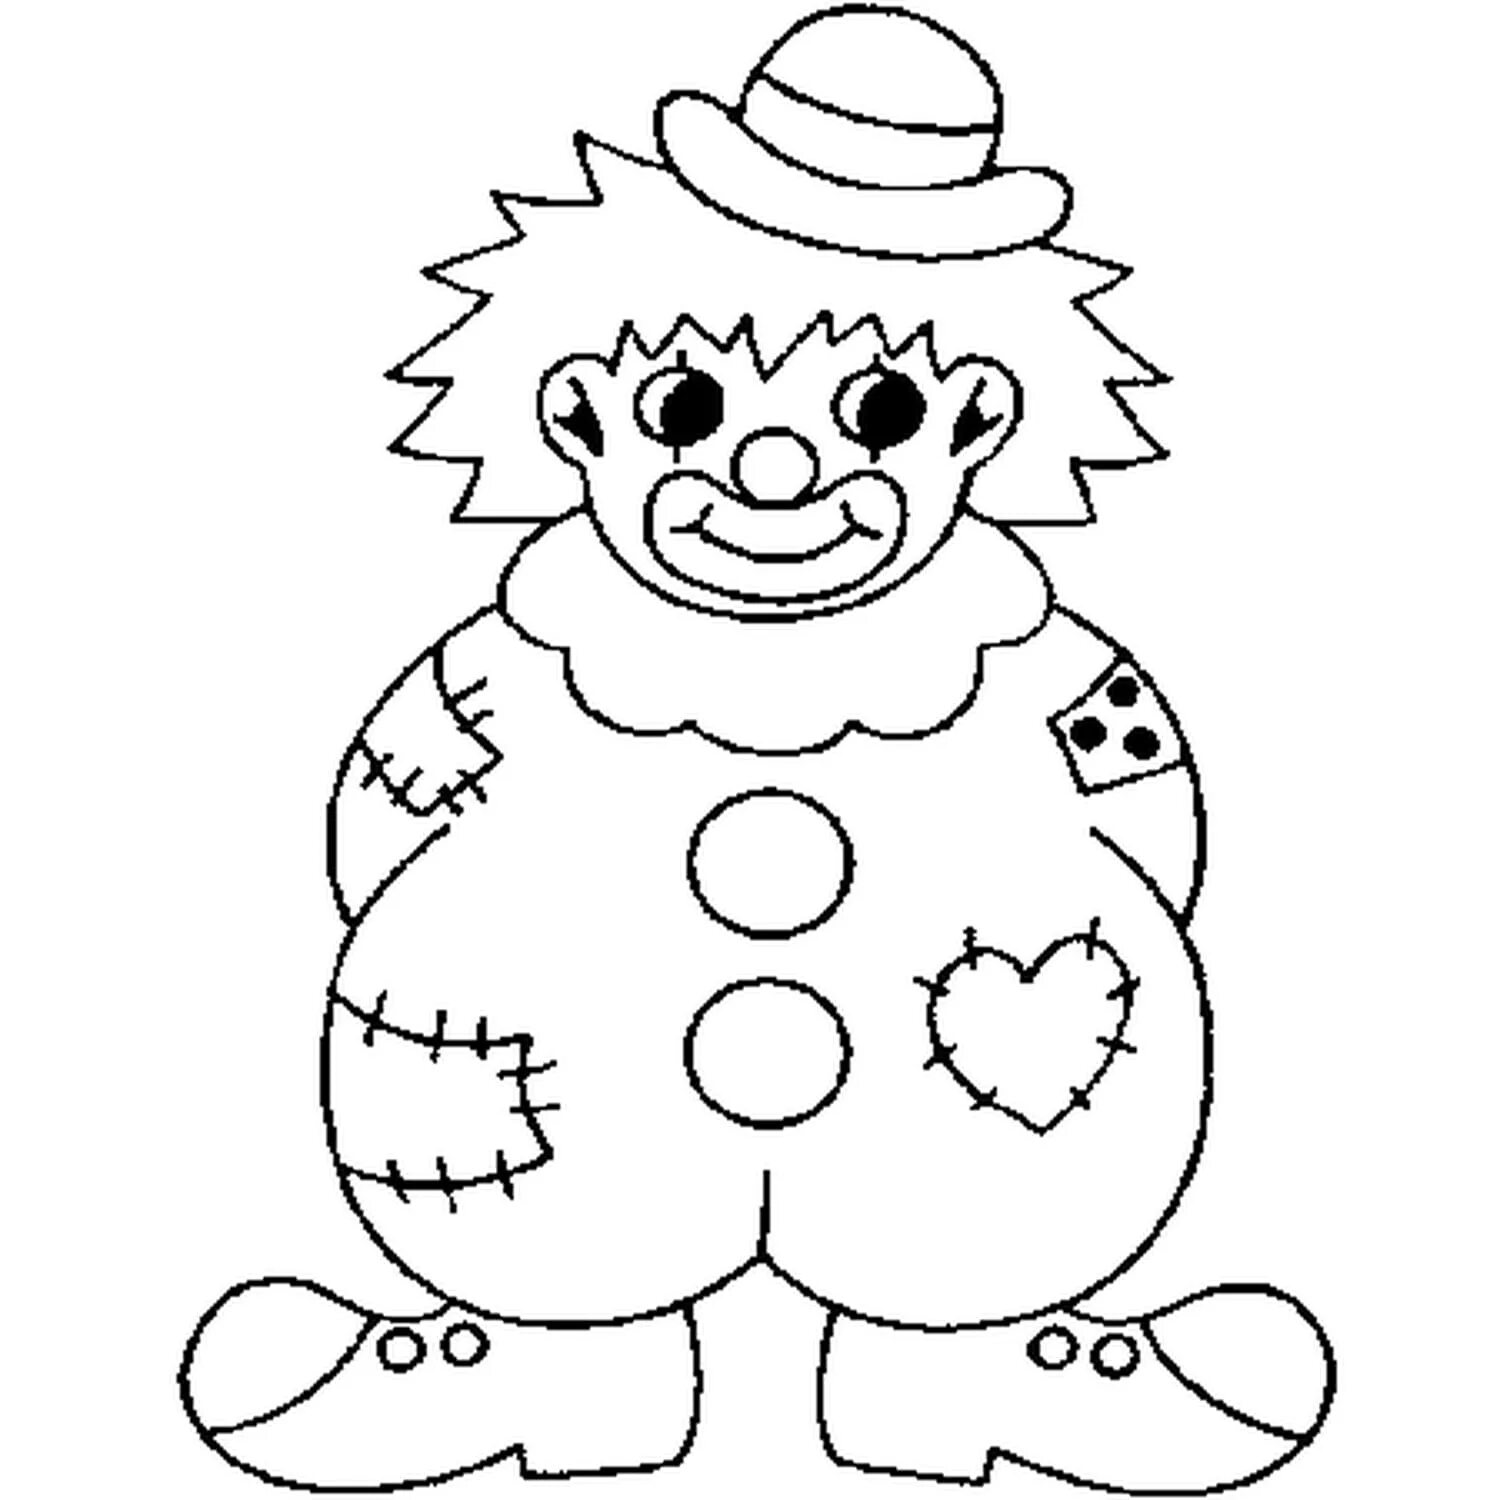 Клоуны раскраска для детей 5 лет. Клоун раскраска. Клоун раскраска для малышей. Клоун раскраска для детей. Раскраска весёлый клоун для детей.